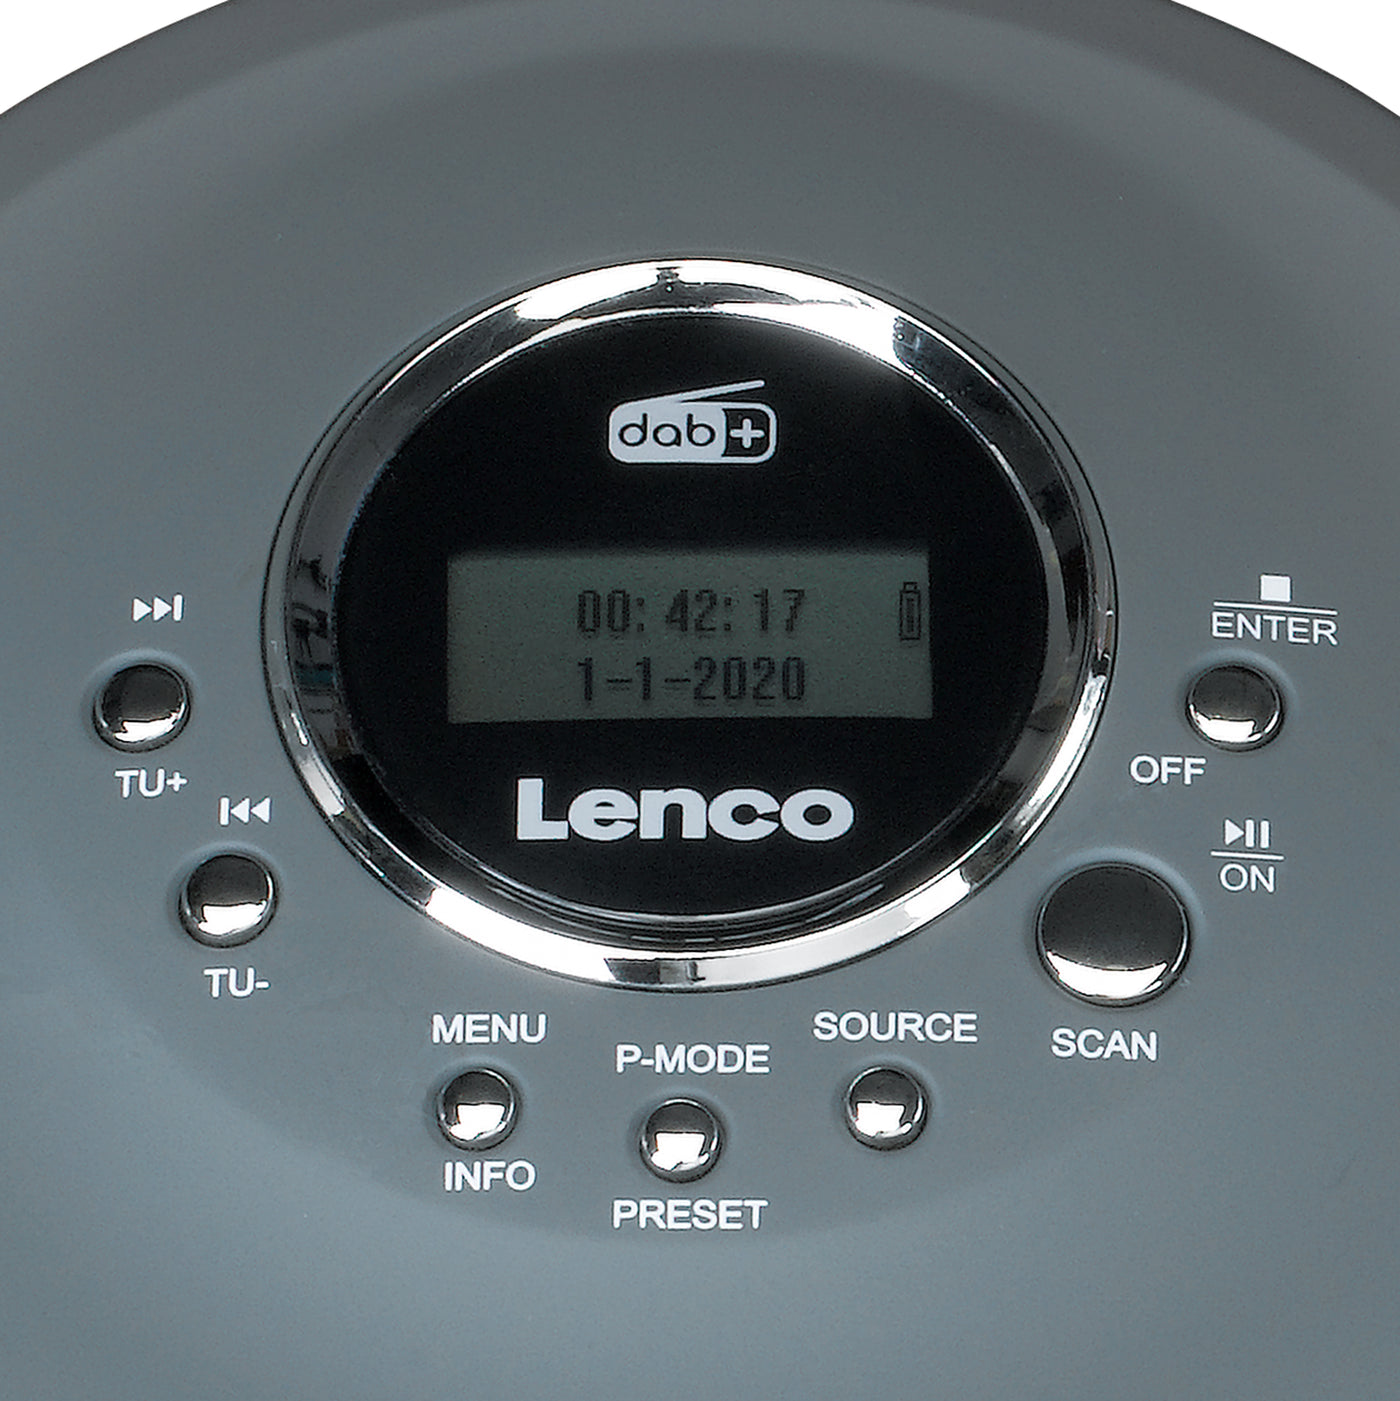 Lenco CD-021KIDS Acheter ?, Boutique officielle Lenco –